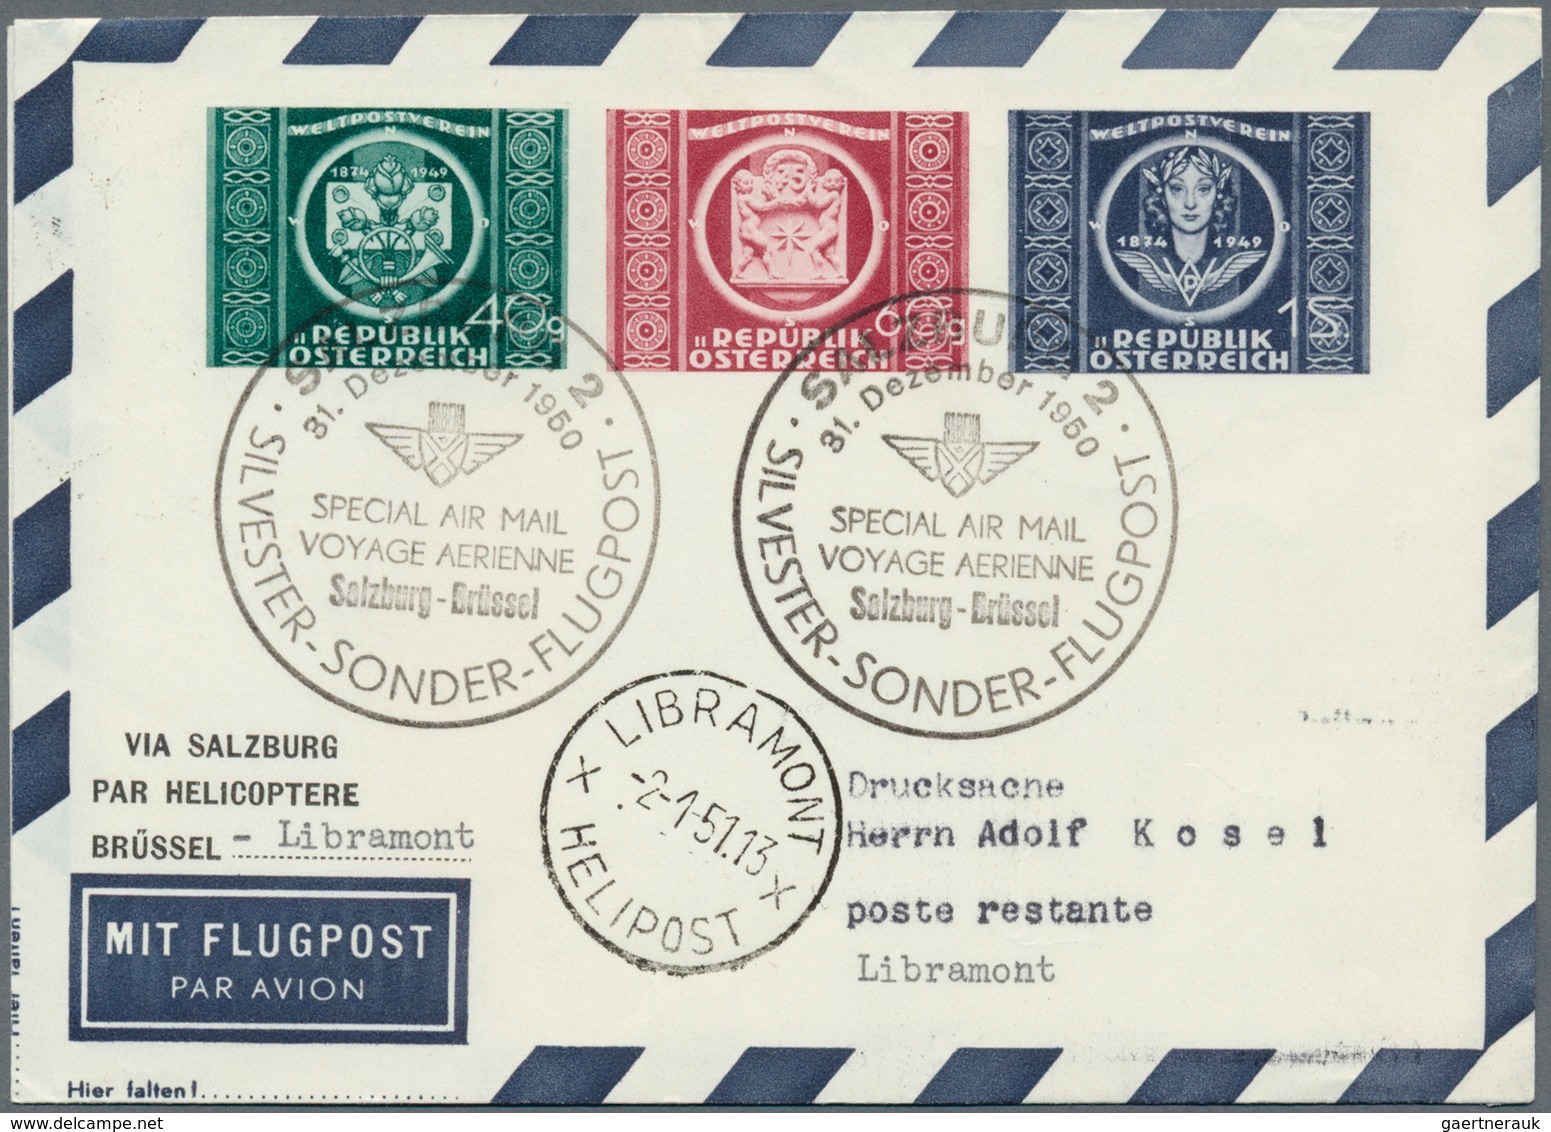 Österreich - Flugpost: 1950, SILVESTER-SONDER-FLUGPOST SALZBURG, 31.12.1950, komplette Serie mit 9 P